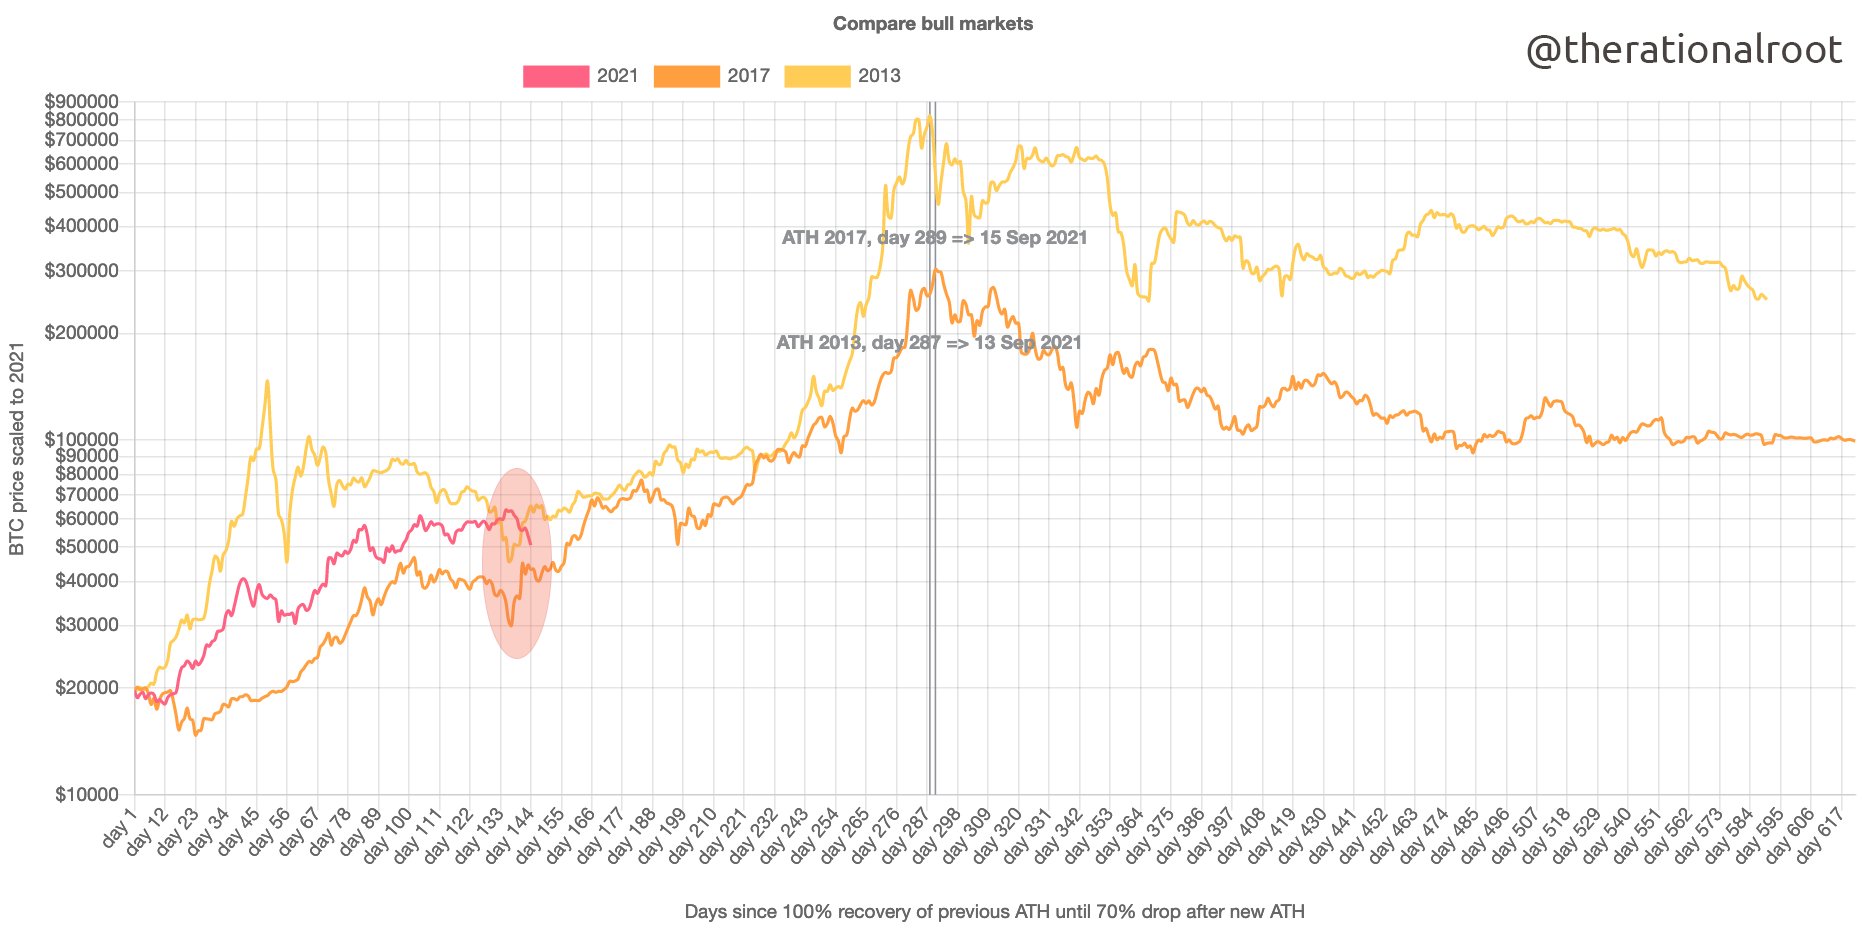 Bitcoin price comparison of historical bullruns